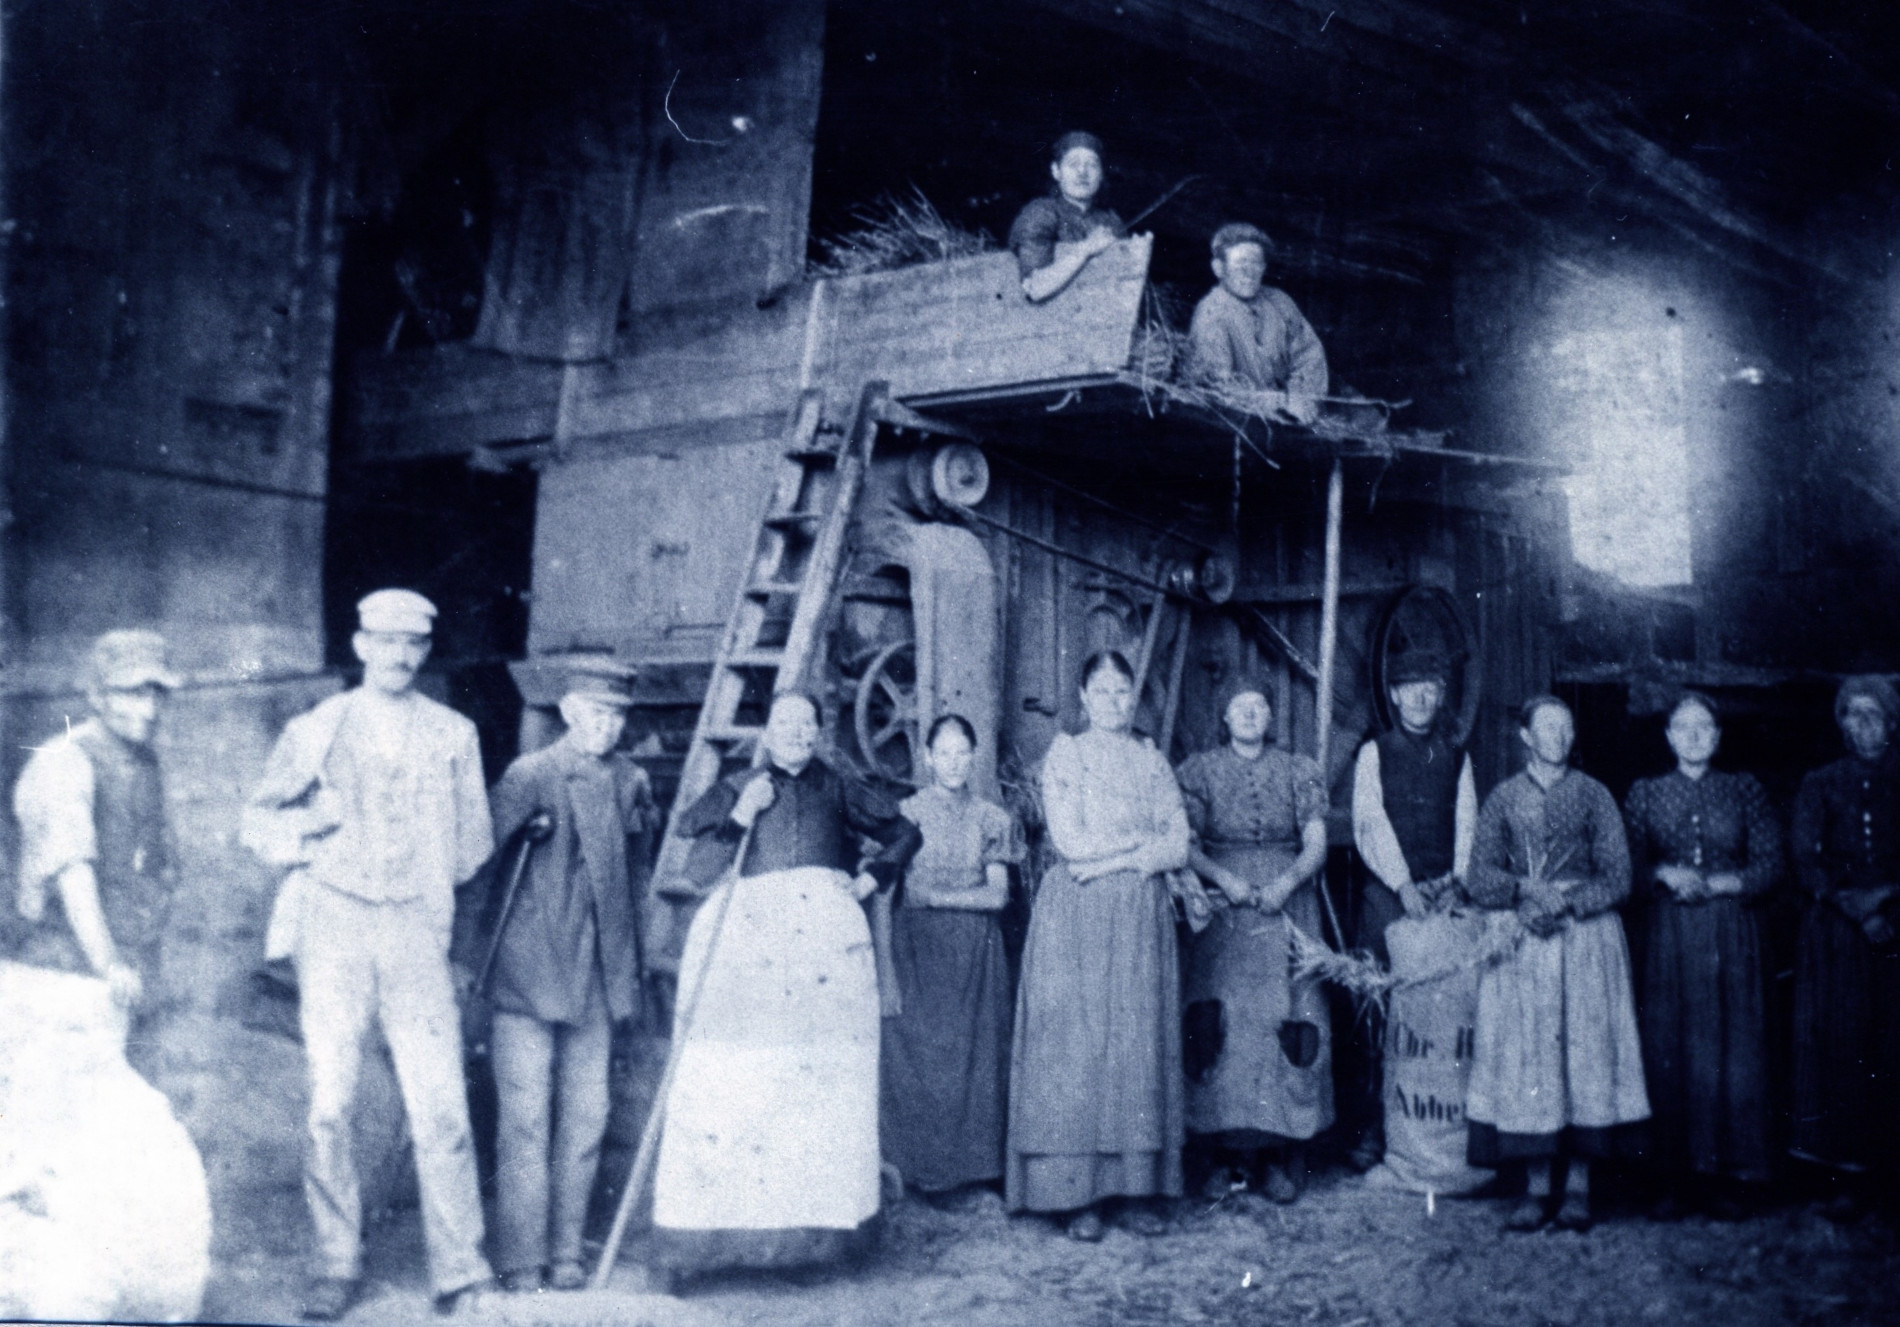 Historische Aufnahme in schwarz-weiß. 11 Männer und Frauen stehen in einer Reihe in einer Art Scheune und blicken zur Kamera. Zwei weitere Personen liegen darüber auf einer Art Heuboden. Es sind historische Gerätschaften für den Mühlenbetrieb zu erahnen.